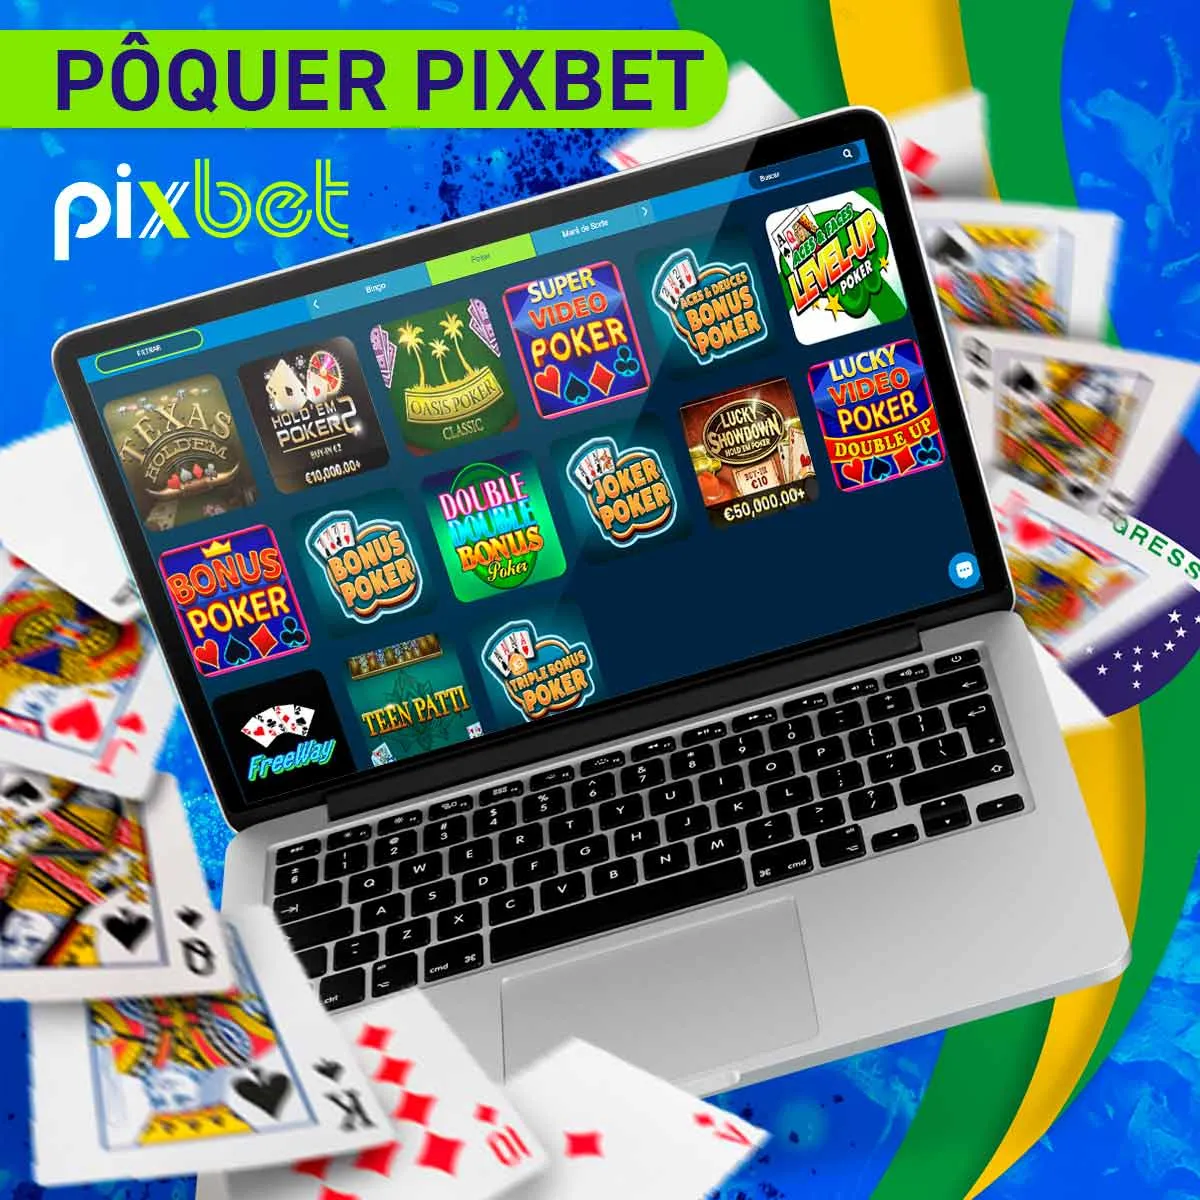 O popular jogo de cartas Poker na casa de apostas Pixbet no Brasil